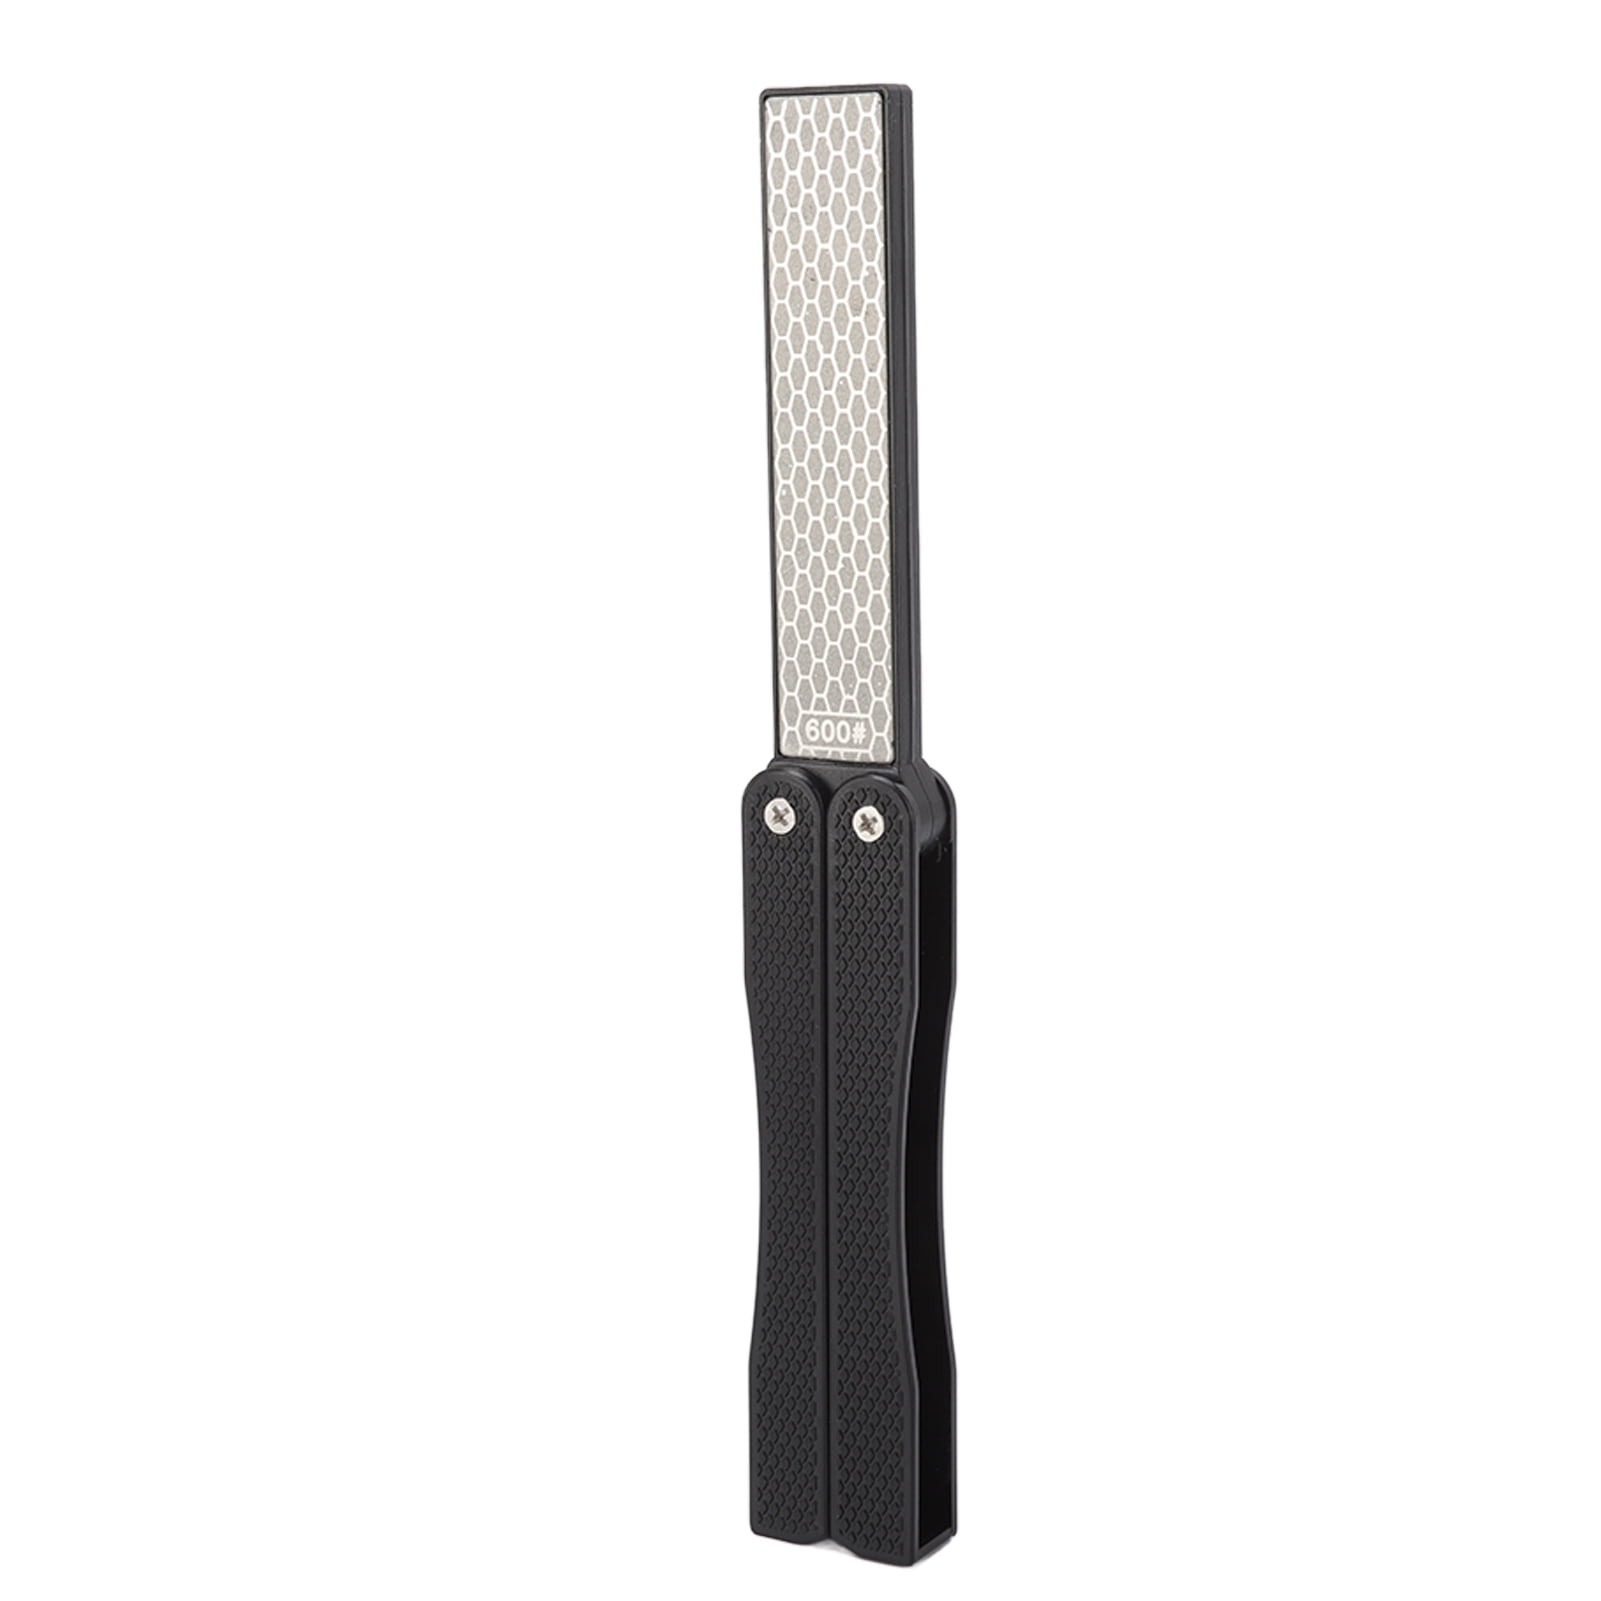 Smith's Pocket Pal Knife Sharpener 50918 